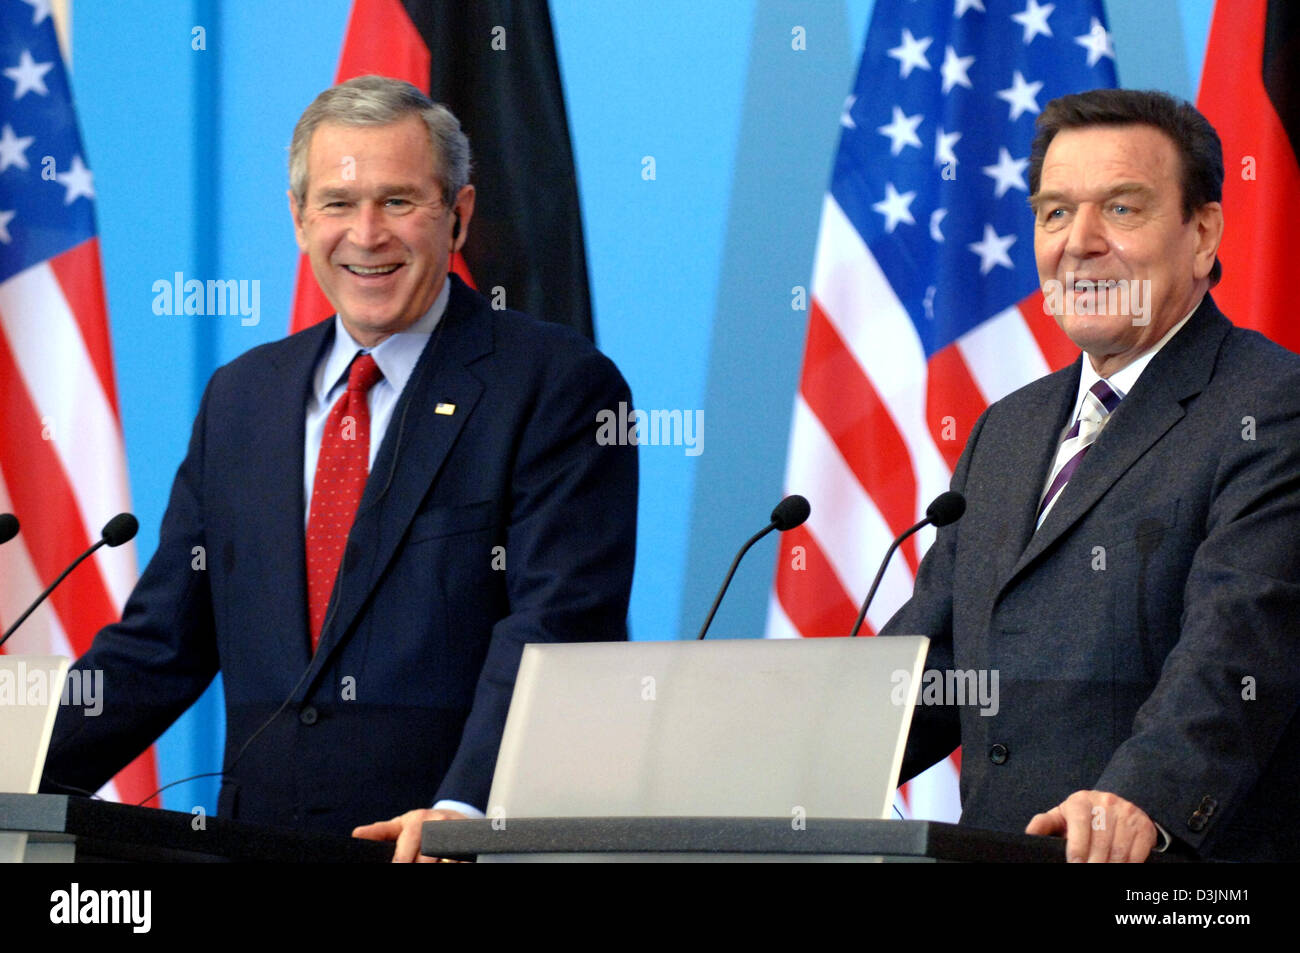 (Dpa) - US-Präsident George W. Bush (L) und Bundeskanzler Gerhard Schroeder Lächeln während einer Pressekonferenz nach dem Treffen in Mainz, den 23. Februar 2005. Ihre Tagung befasste sich mit der Consolodiation der deutsch-amerikanische Beziehungen, die aktuelle Situation im Irak, den Nahen Osten und Iran. Ein Schwerpunkt wurde auf Klimaschutz. Bush kam heute Morgen fo Stockfoto